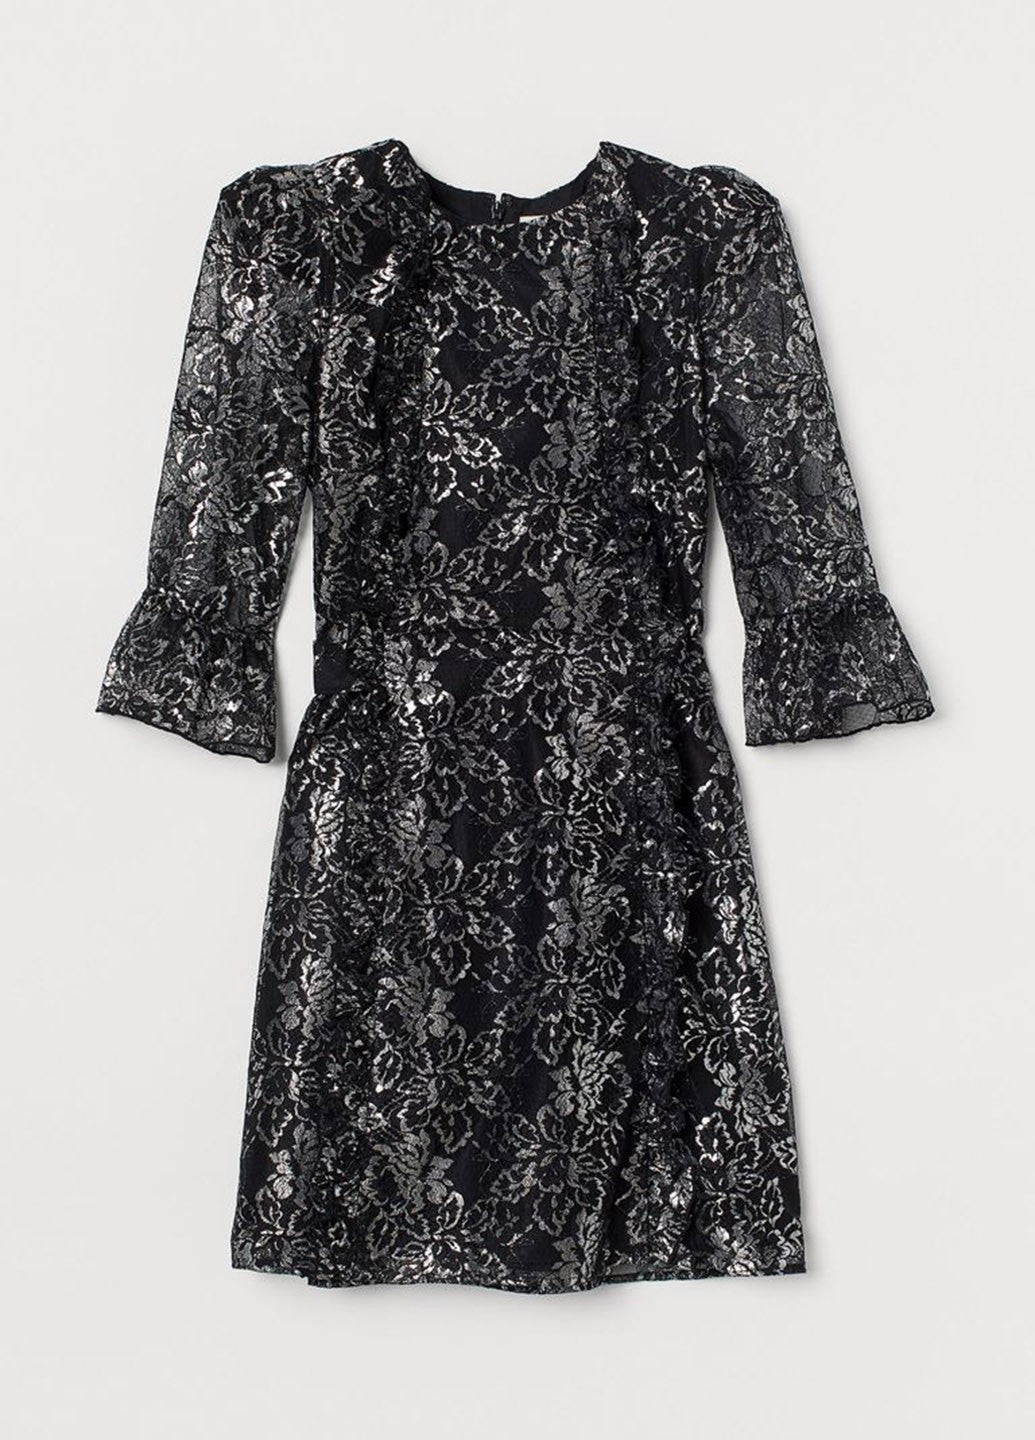 Черное коктейльное женское короткое платье в цветочный принт (10222) 36 черное H&M